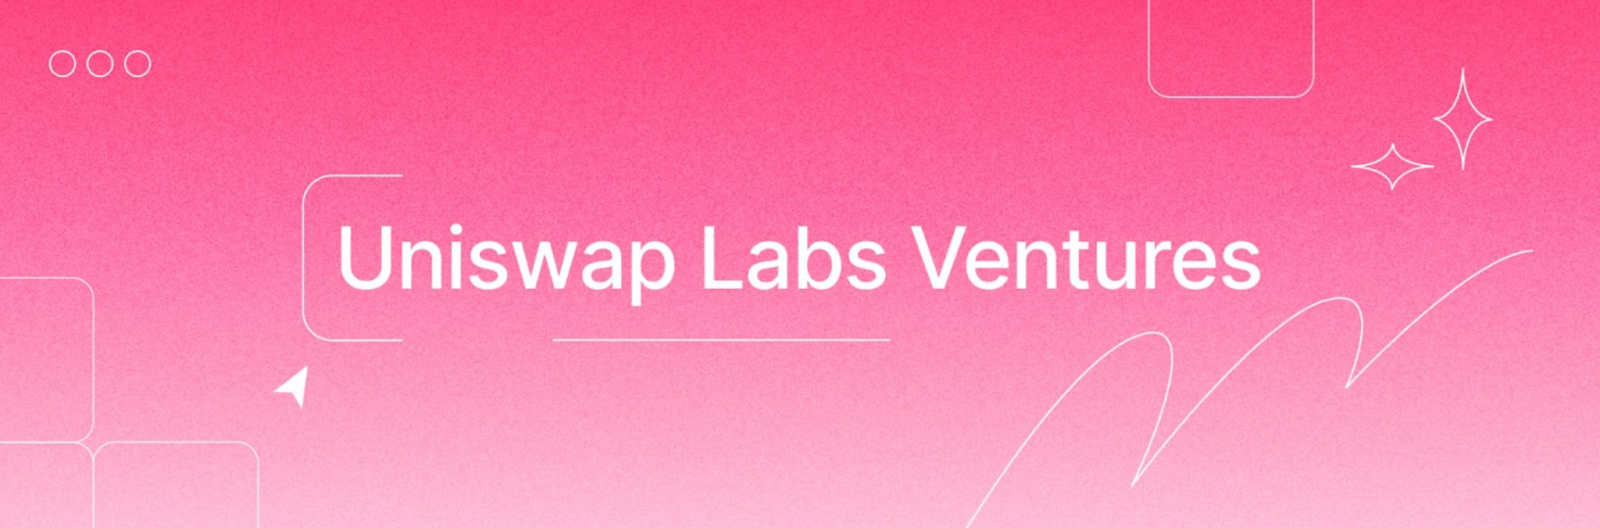 Uniswap lance son fonds capital-risque Uniswap Labs Ventures pour financer les projets web3